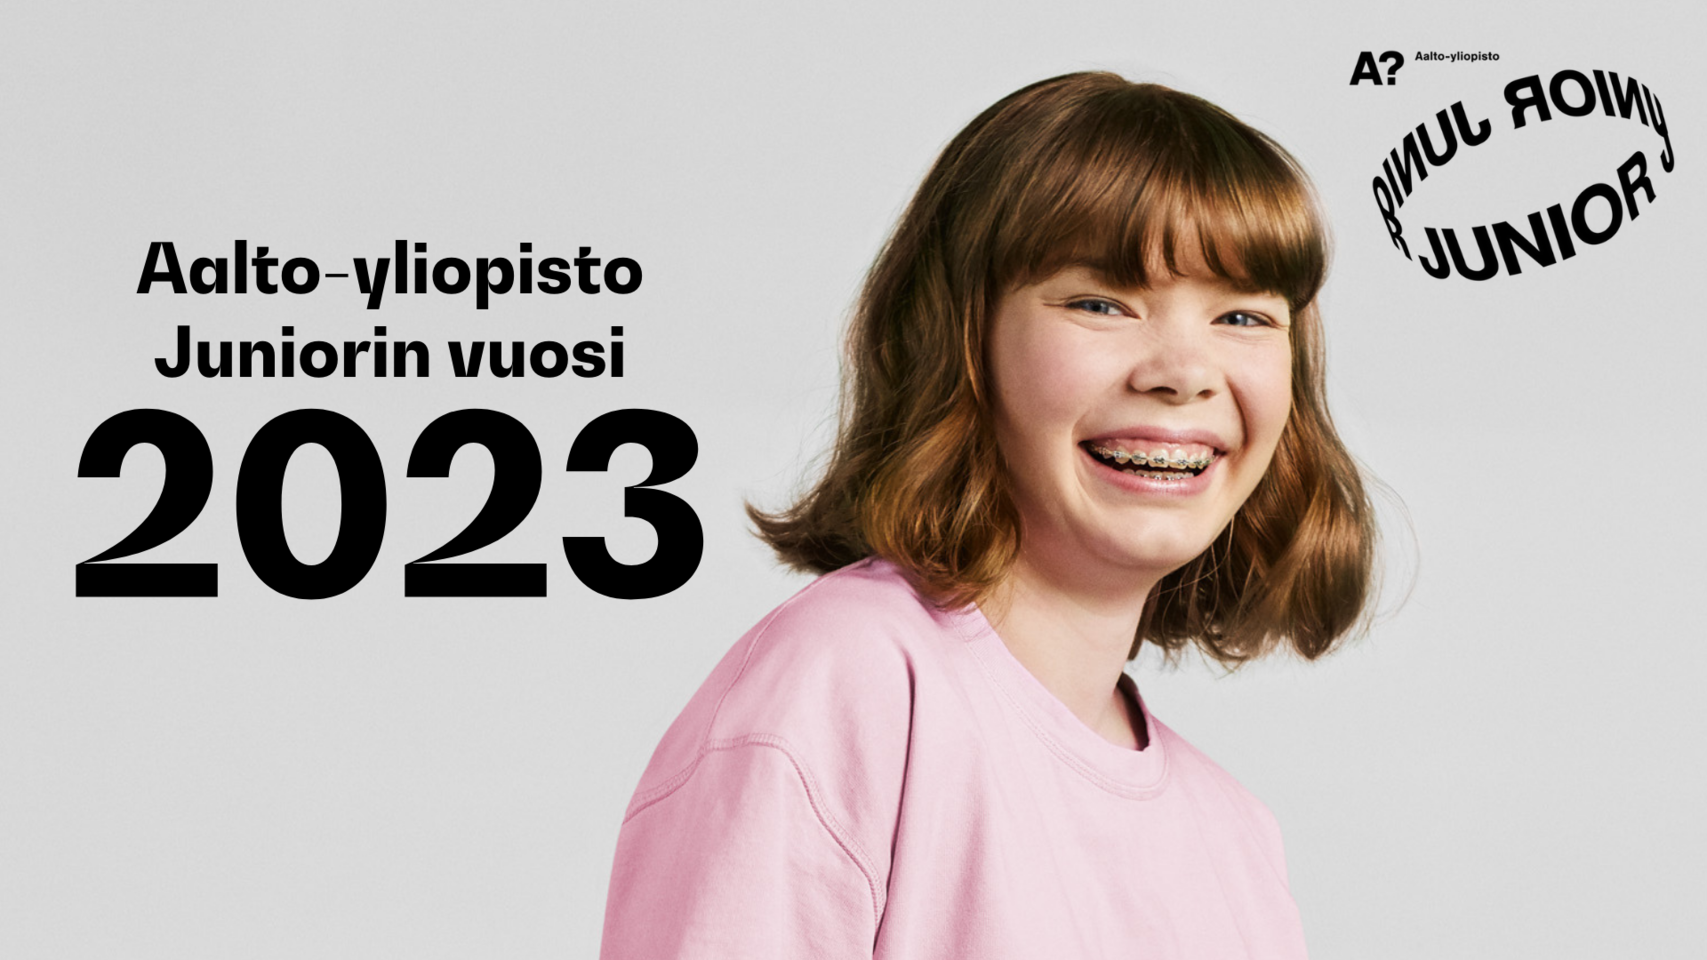 Aalto-yliopisto Juniorin vuosi 2023